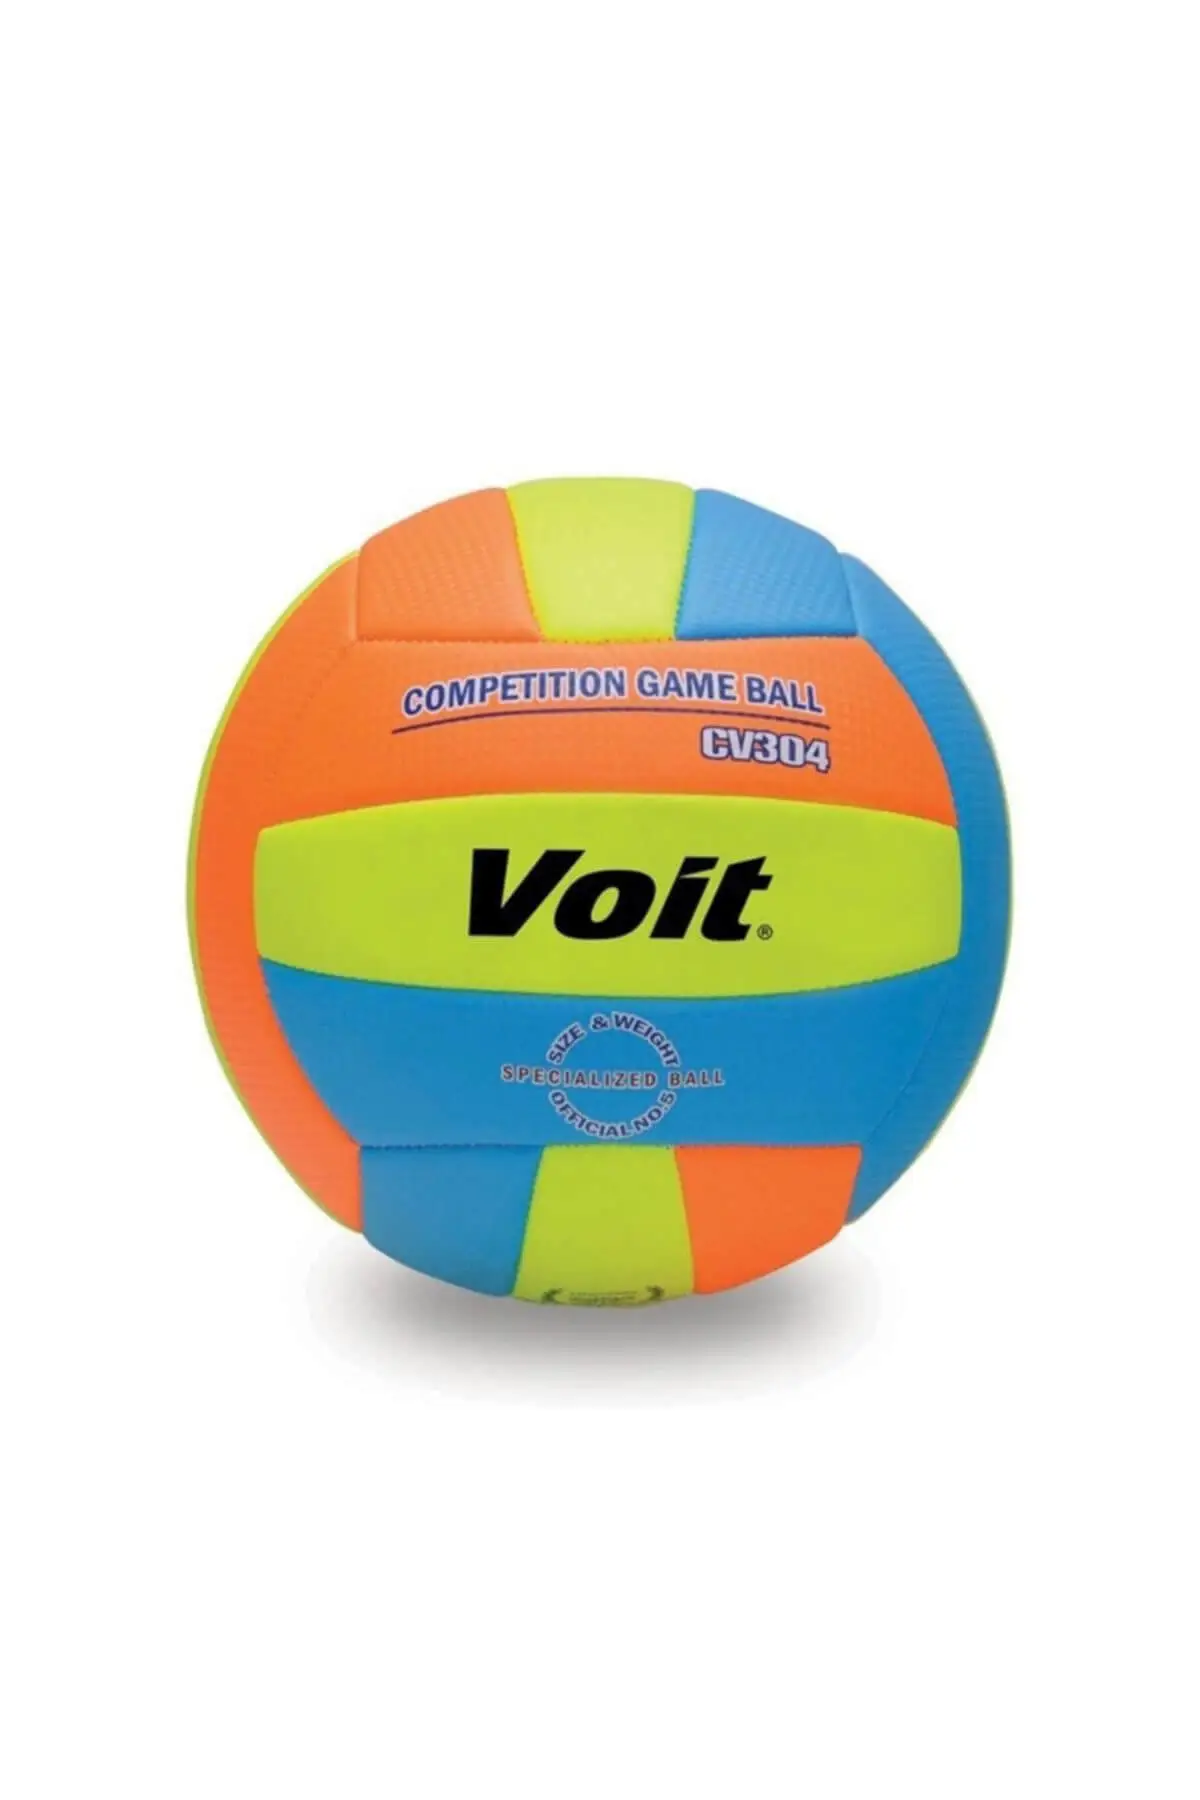 Желтый Волейбольный мяч Voit Cv304 - купить по выгодной цене |